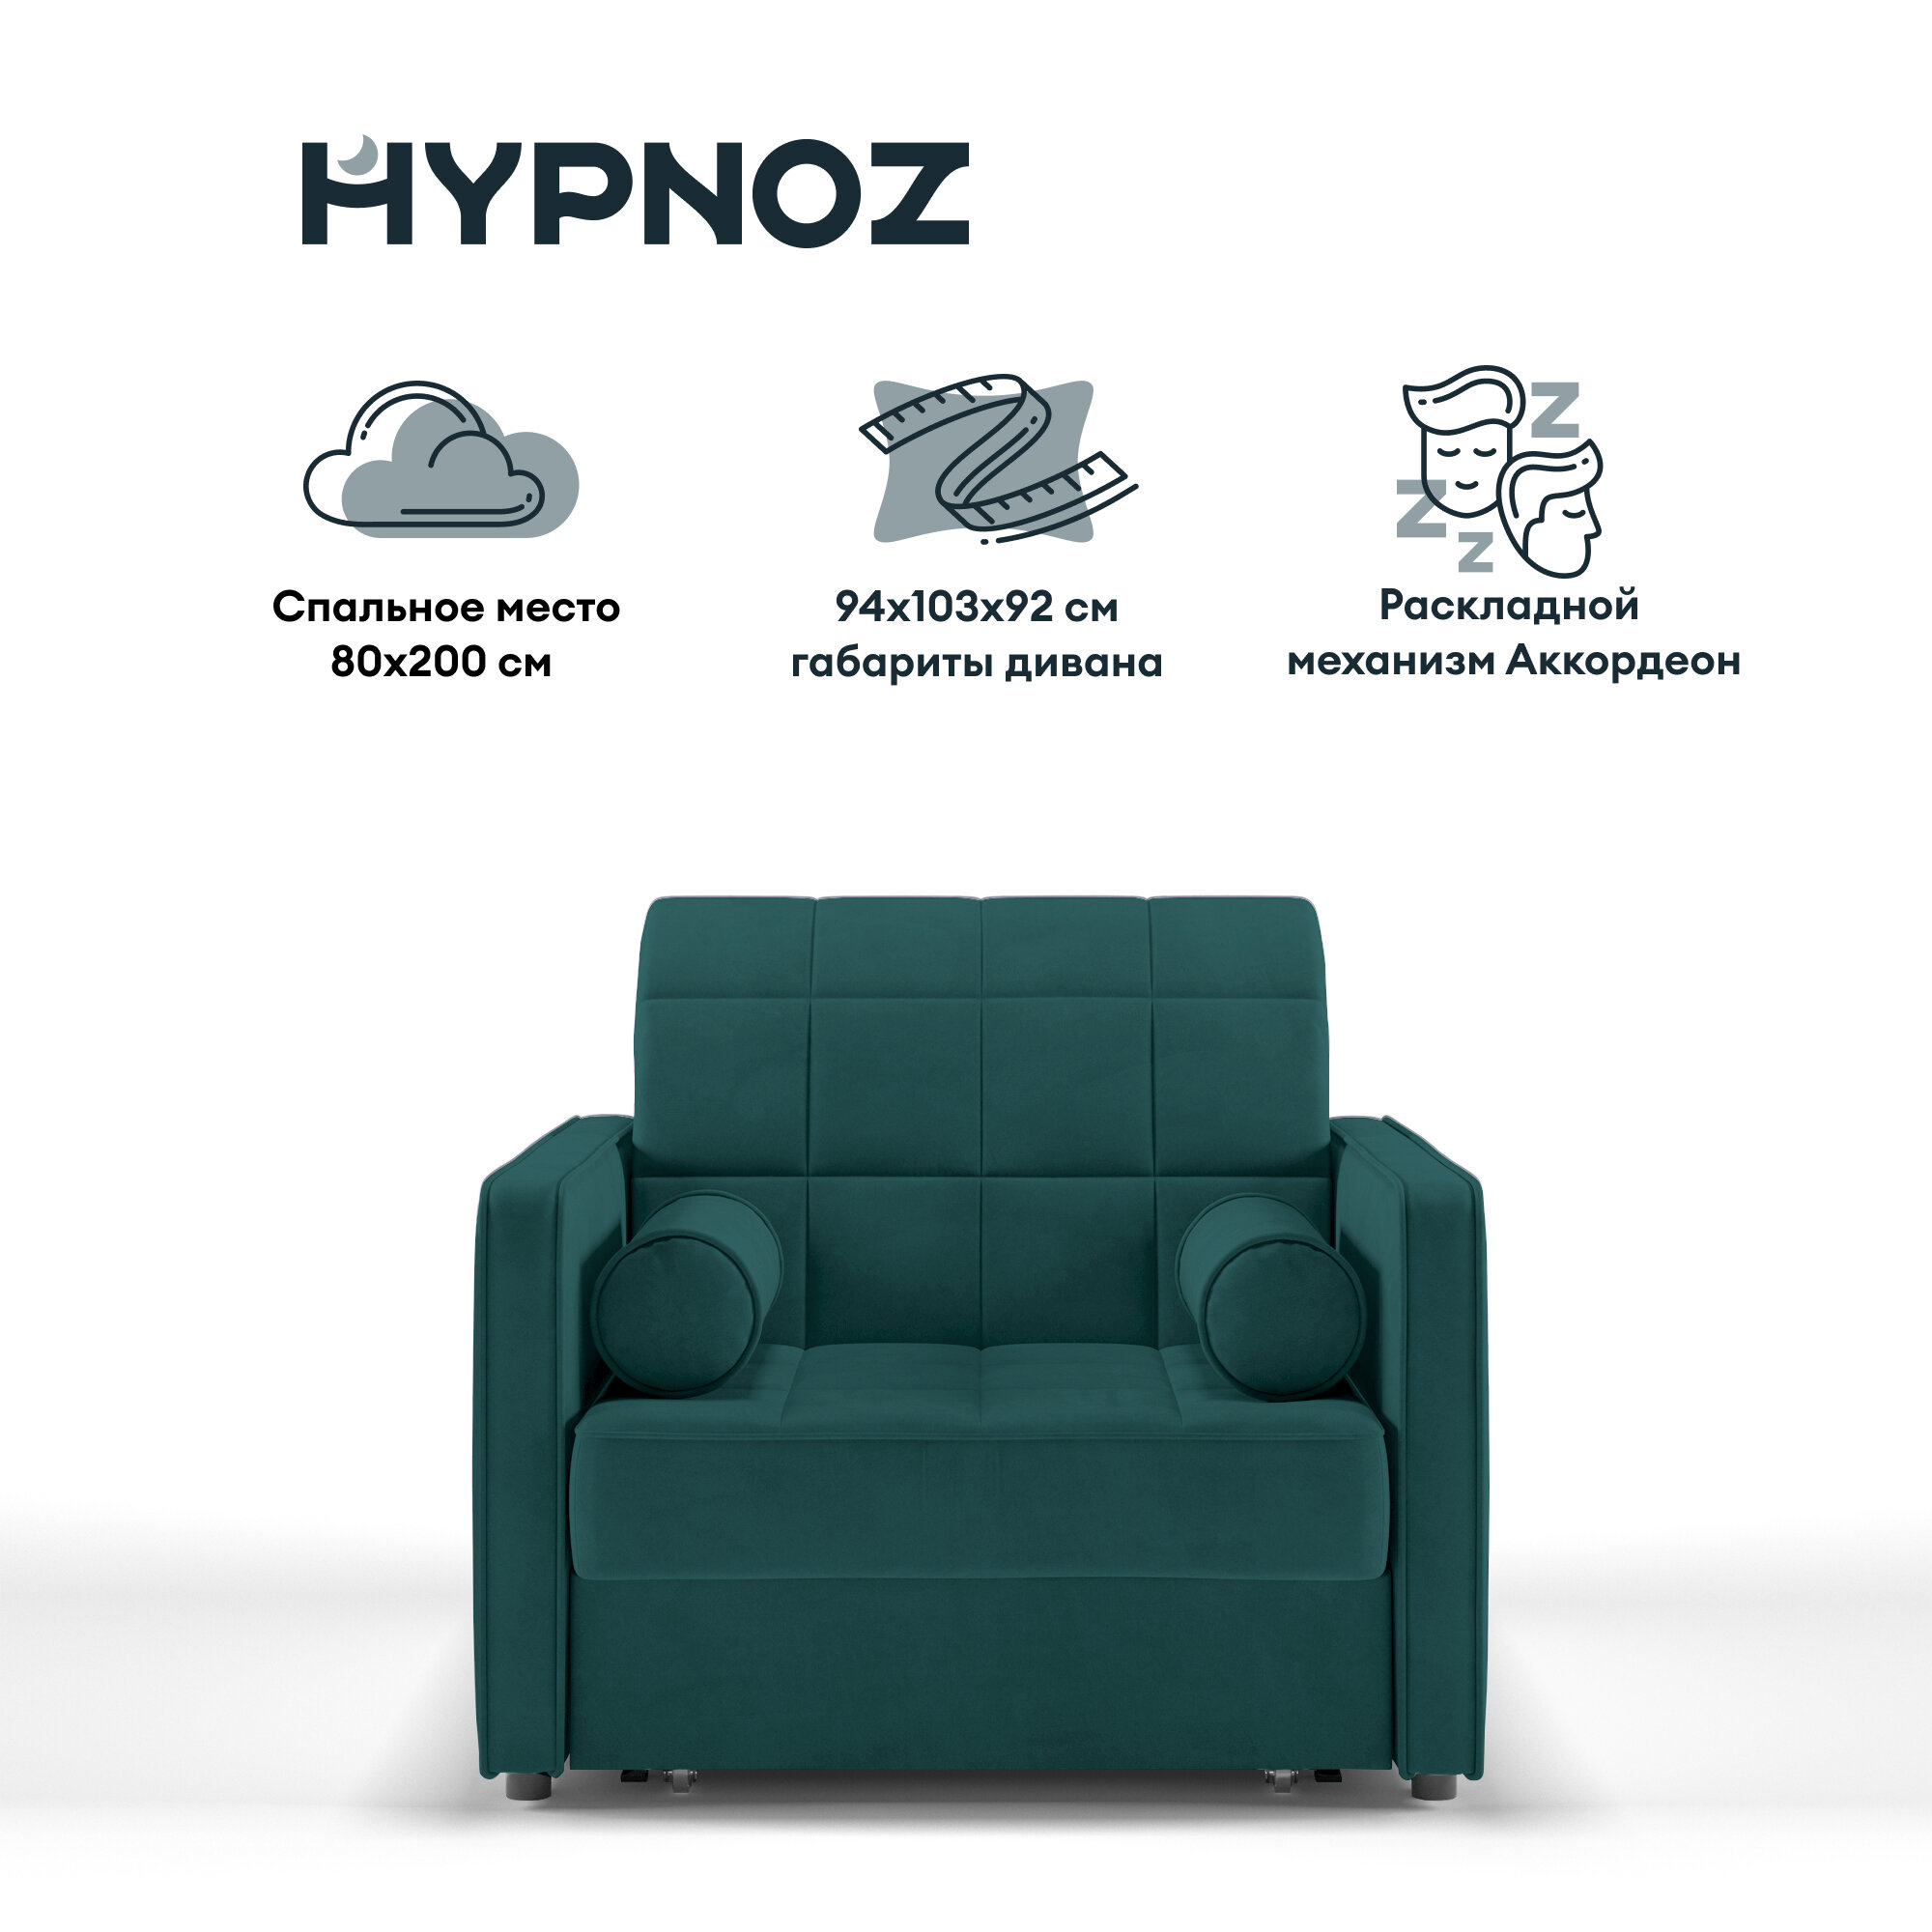 Диван-кровать, Прямой диван HYPNOZ Palma, механизм Аккордеон, Зеленый, 94х103х92 см